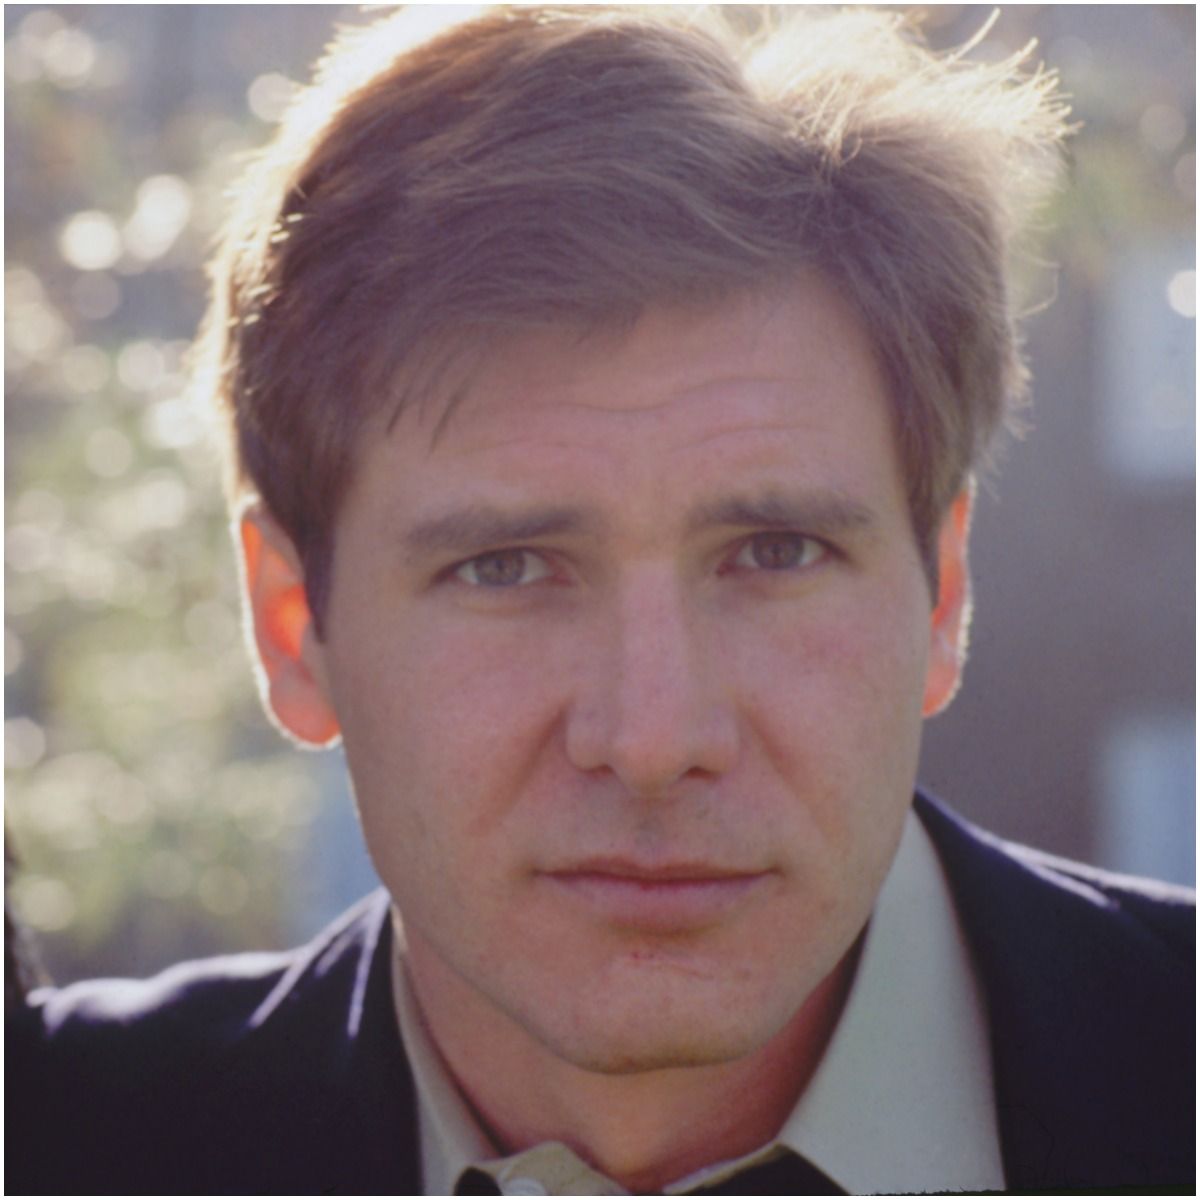 Harrison Ford scar on chin